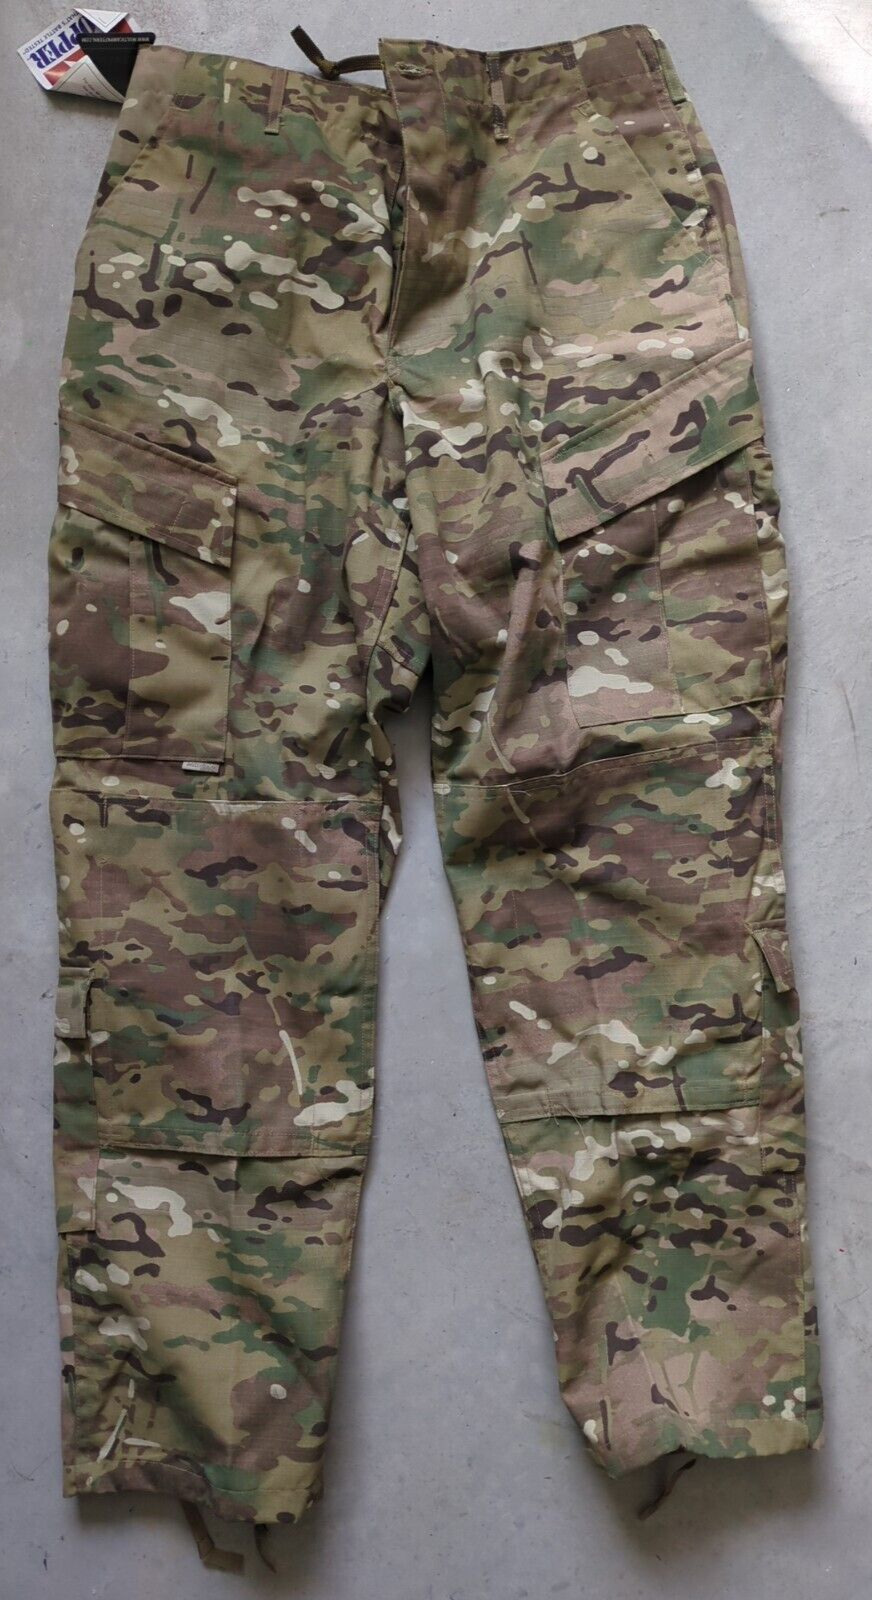 New Propper Tactical Combat Uniform Multicam Camo Pants Trousers Medium Regular